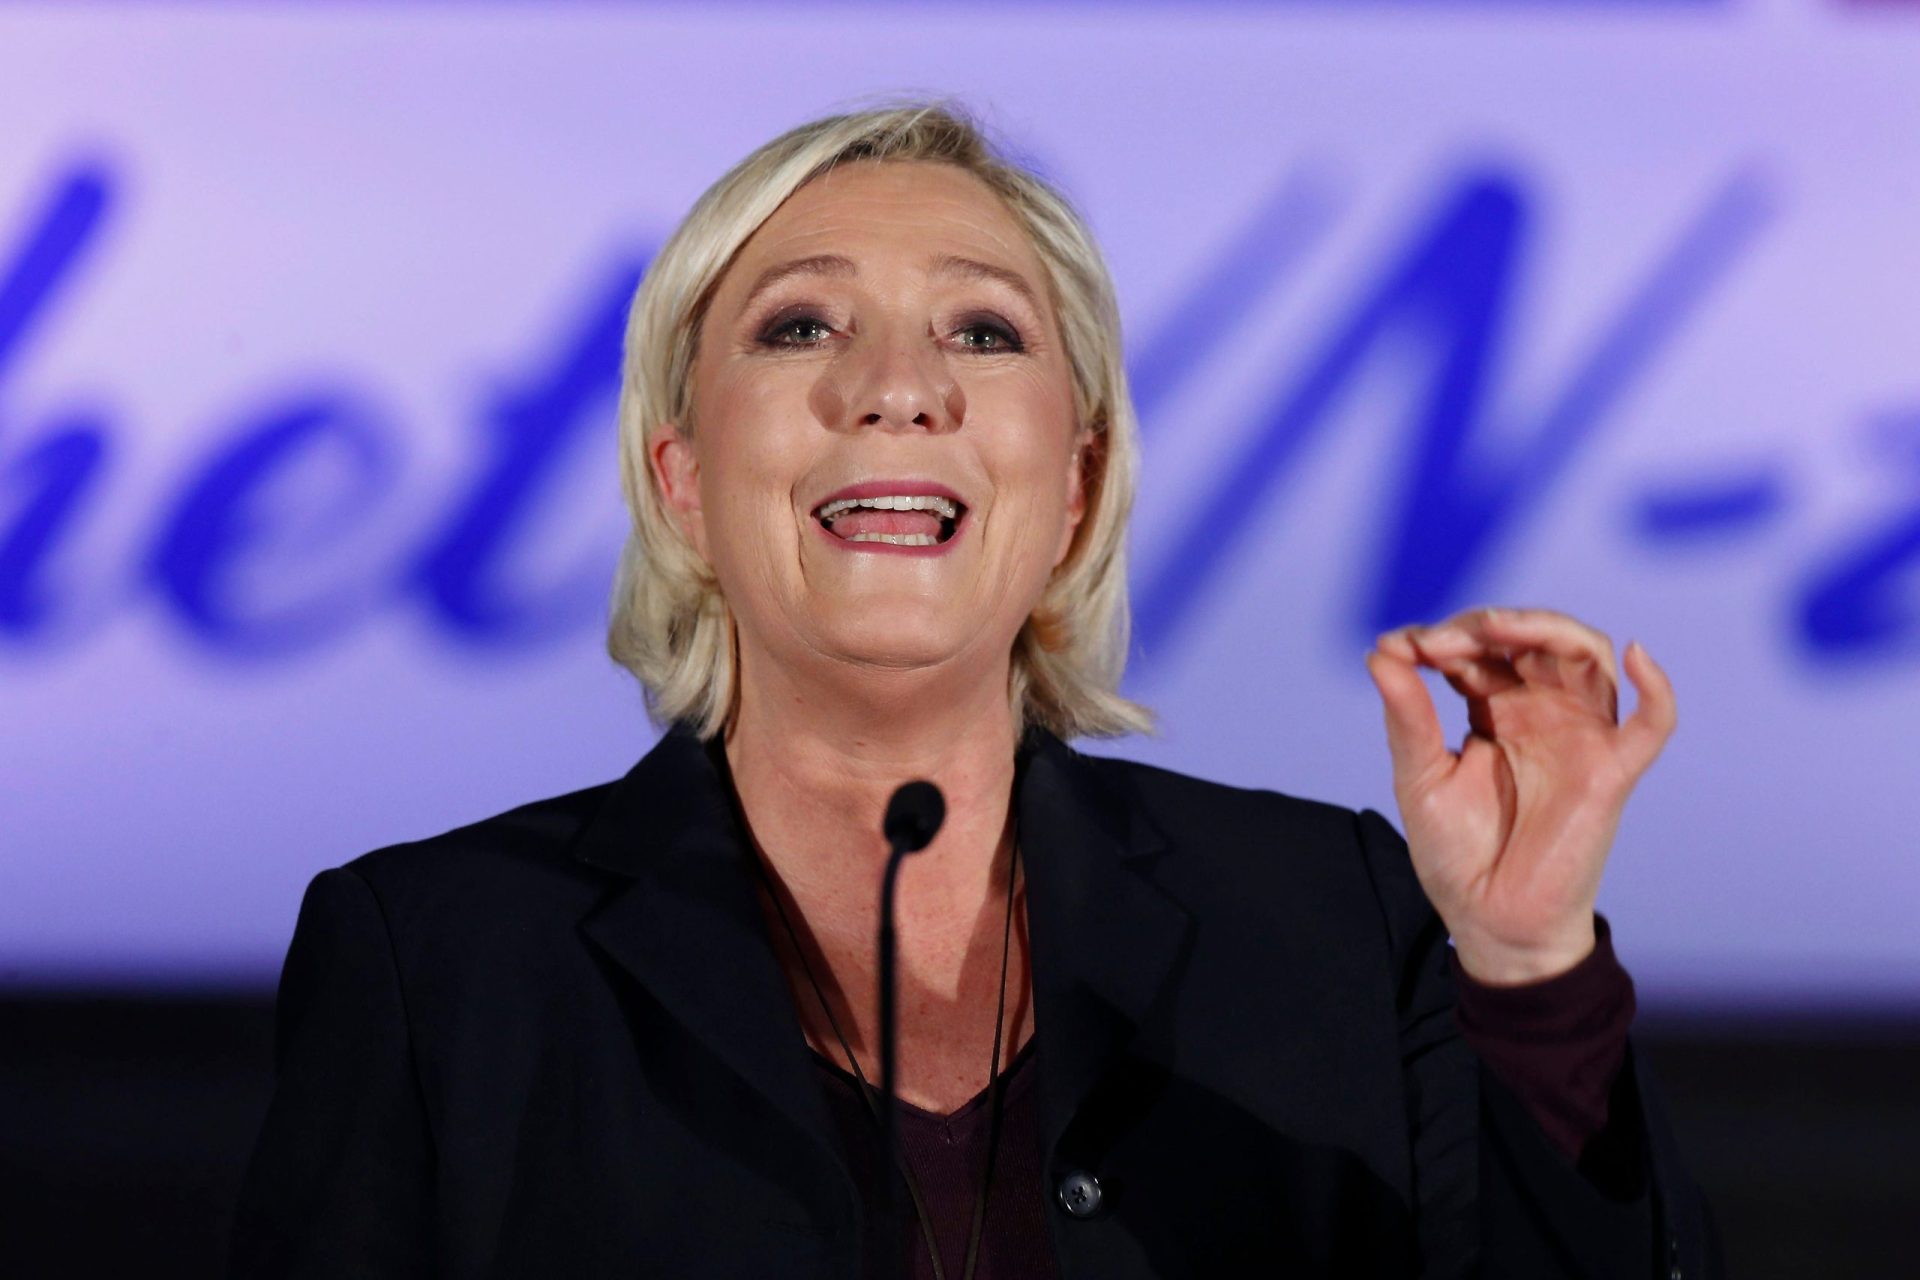 Le Pen quer “respostas fortes de Macron”